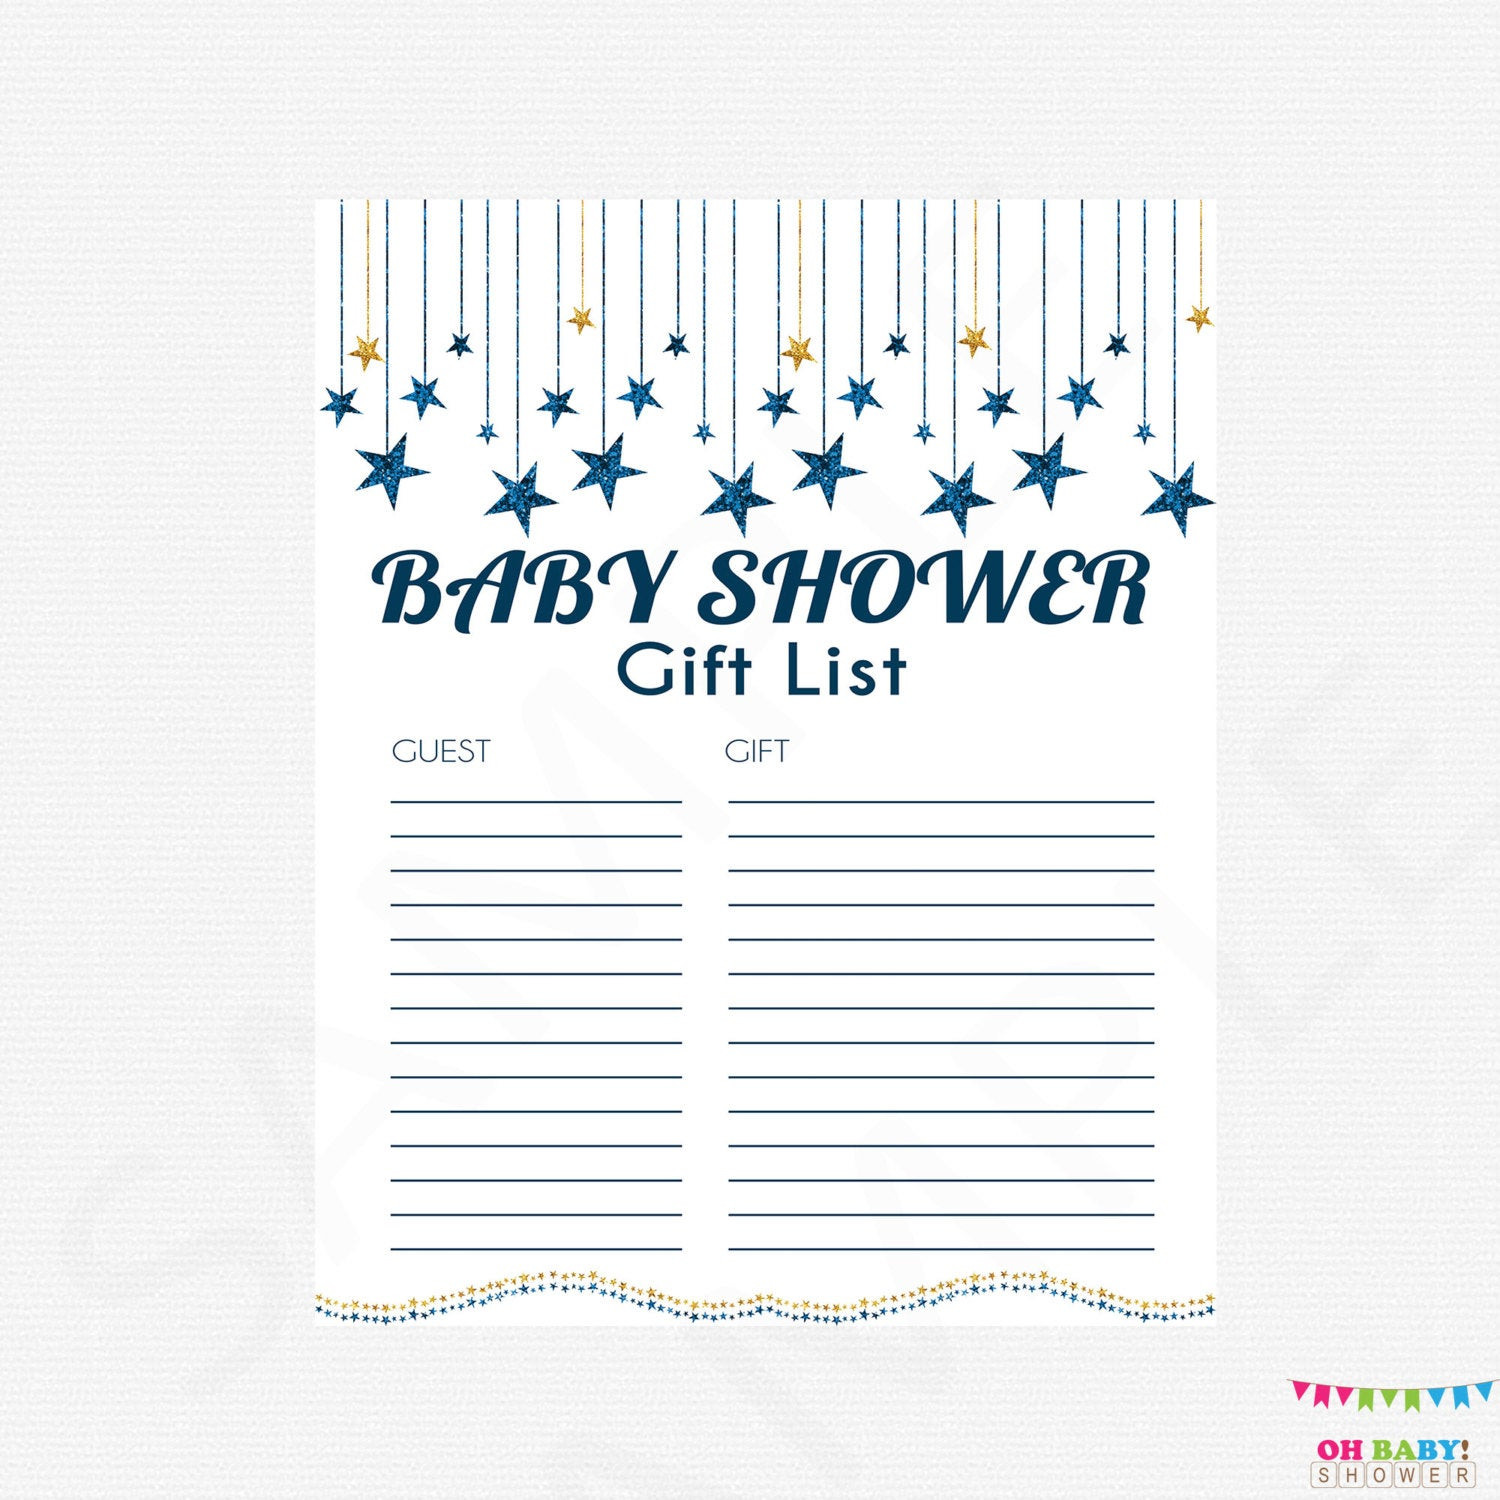 Baby Shower Gift List Printable
 Twinkle Dark Blue and Gold Baby Shower Gift List Printable